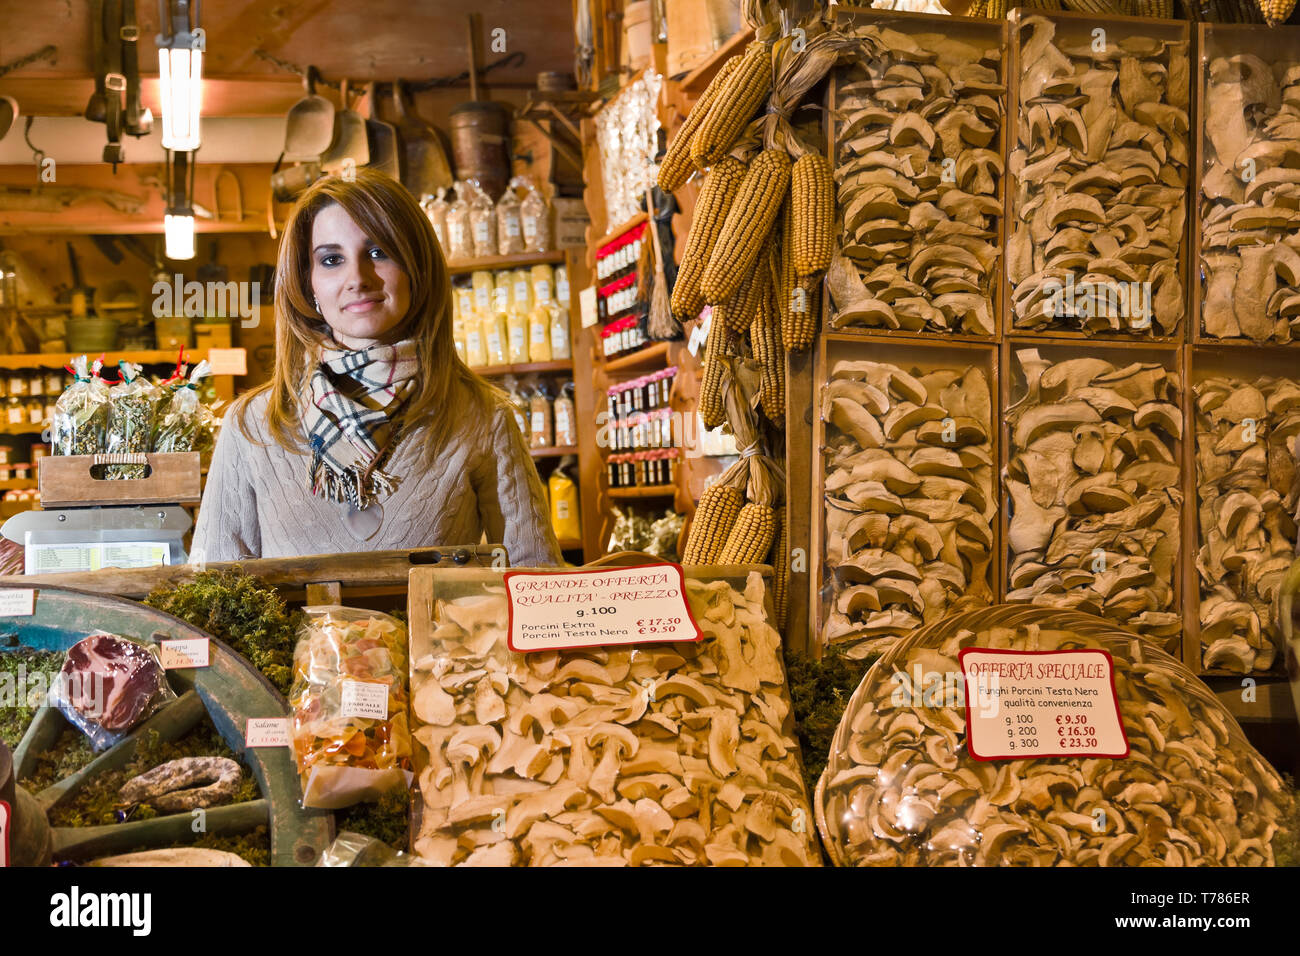 Bormio, negozio 'La Sceleira':  Veronica Pozzi (figlia del titolare) dietro a confezioni di funghi secchi.  [ENG]  Bormio, 'La Sceleira' shop: Veronic Stock Photo